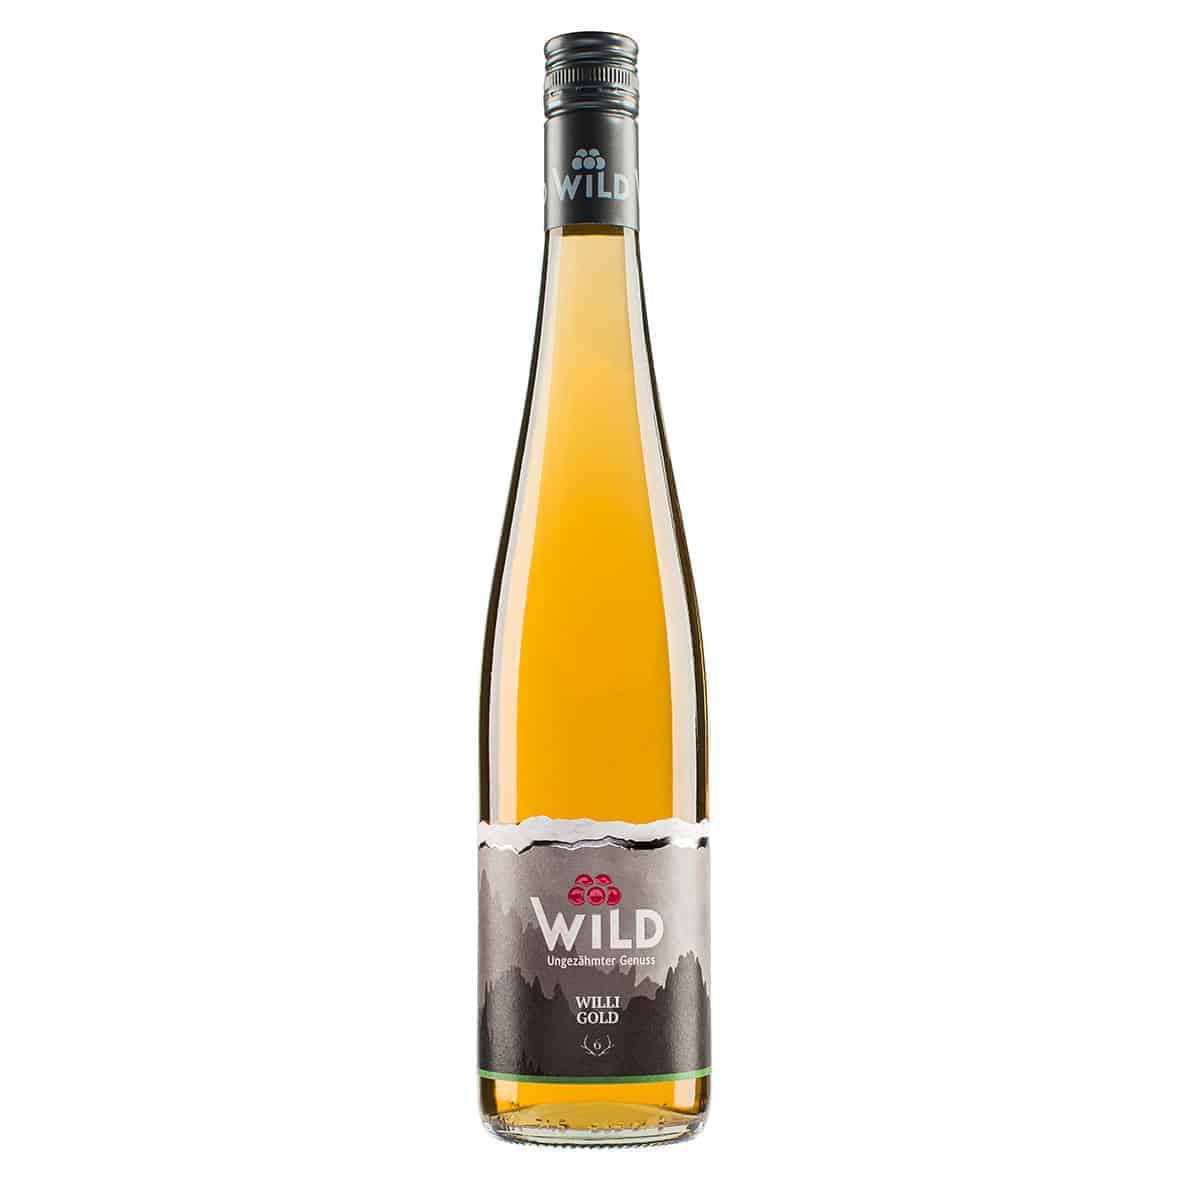 Wild Williams Gold Fruchtauszug 35%vol, 0,7l